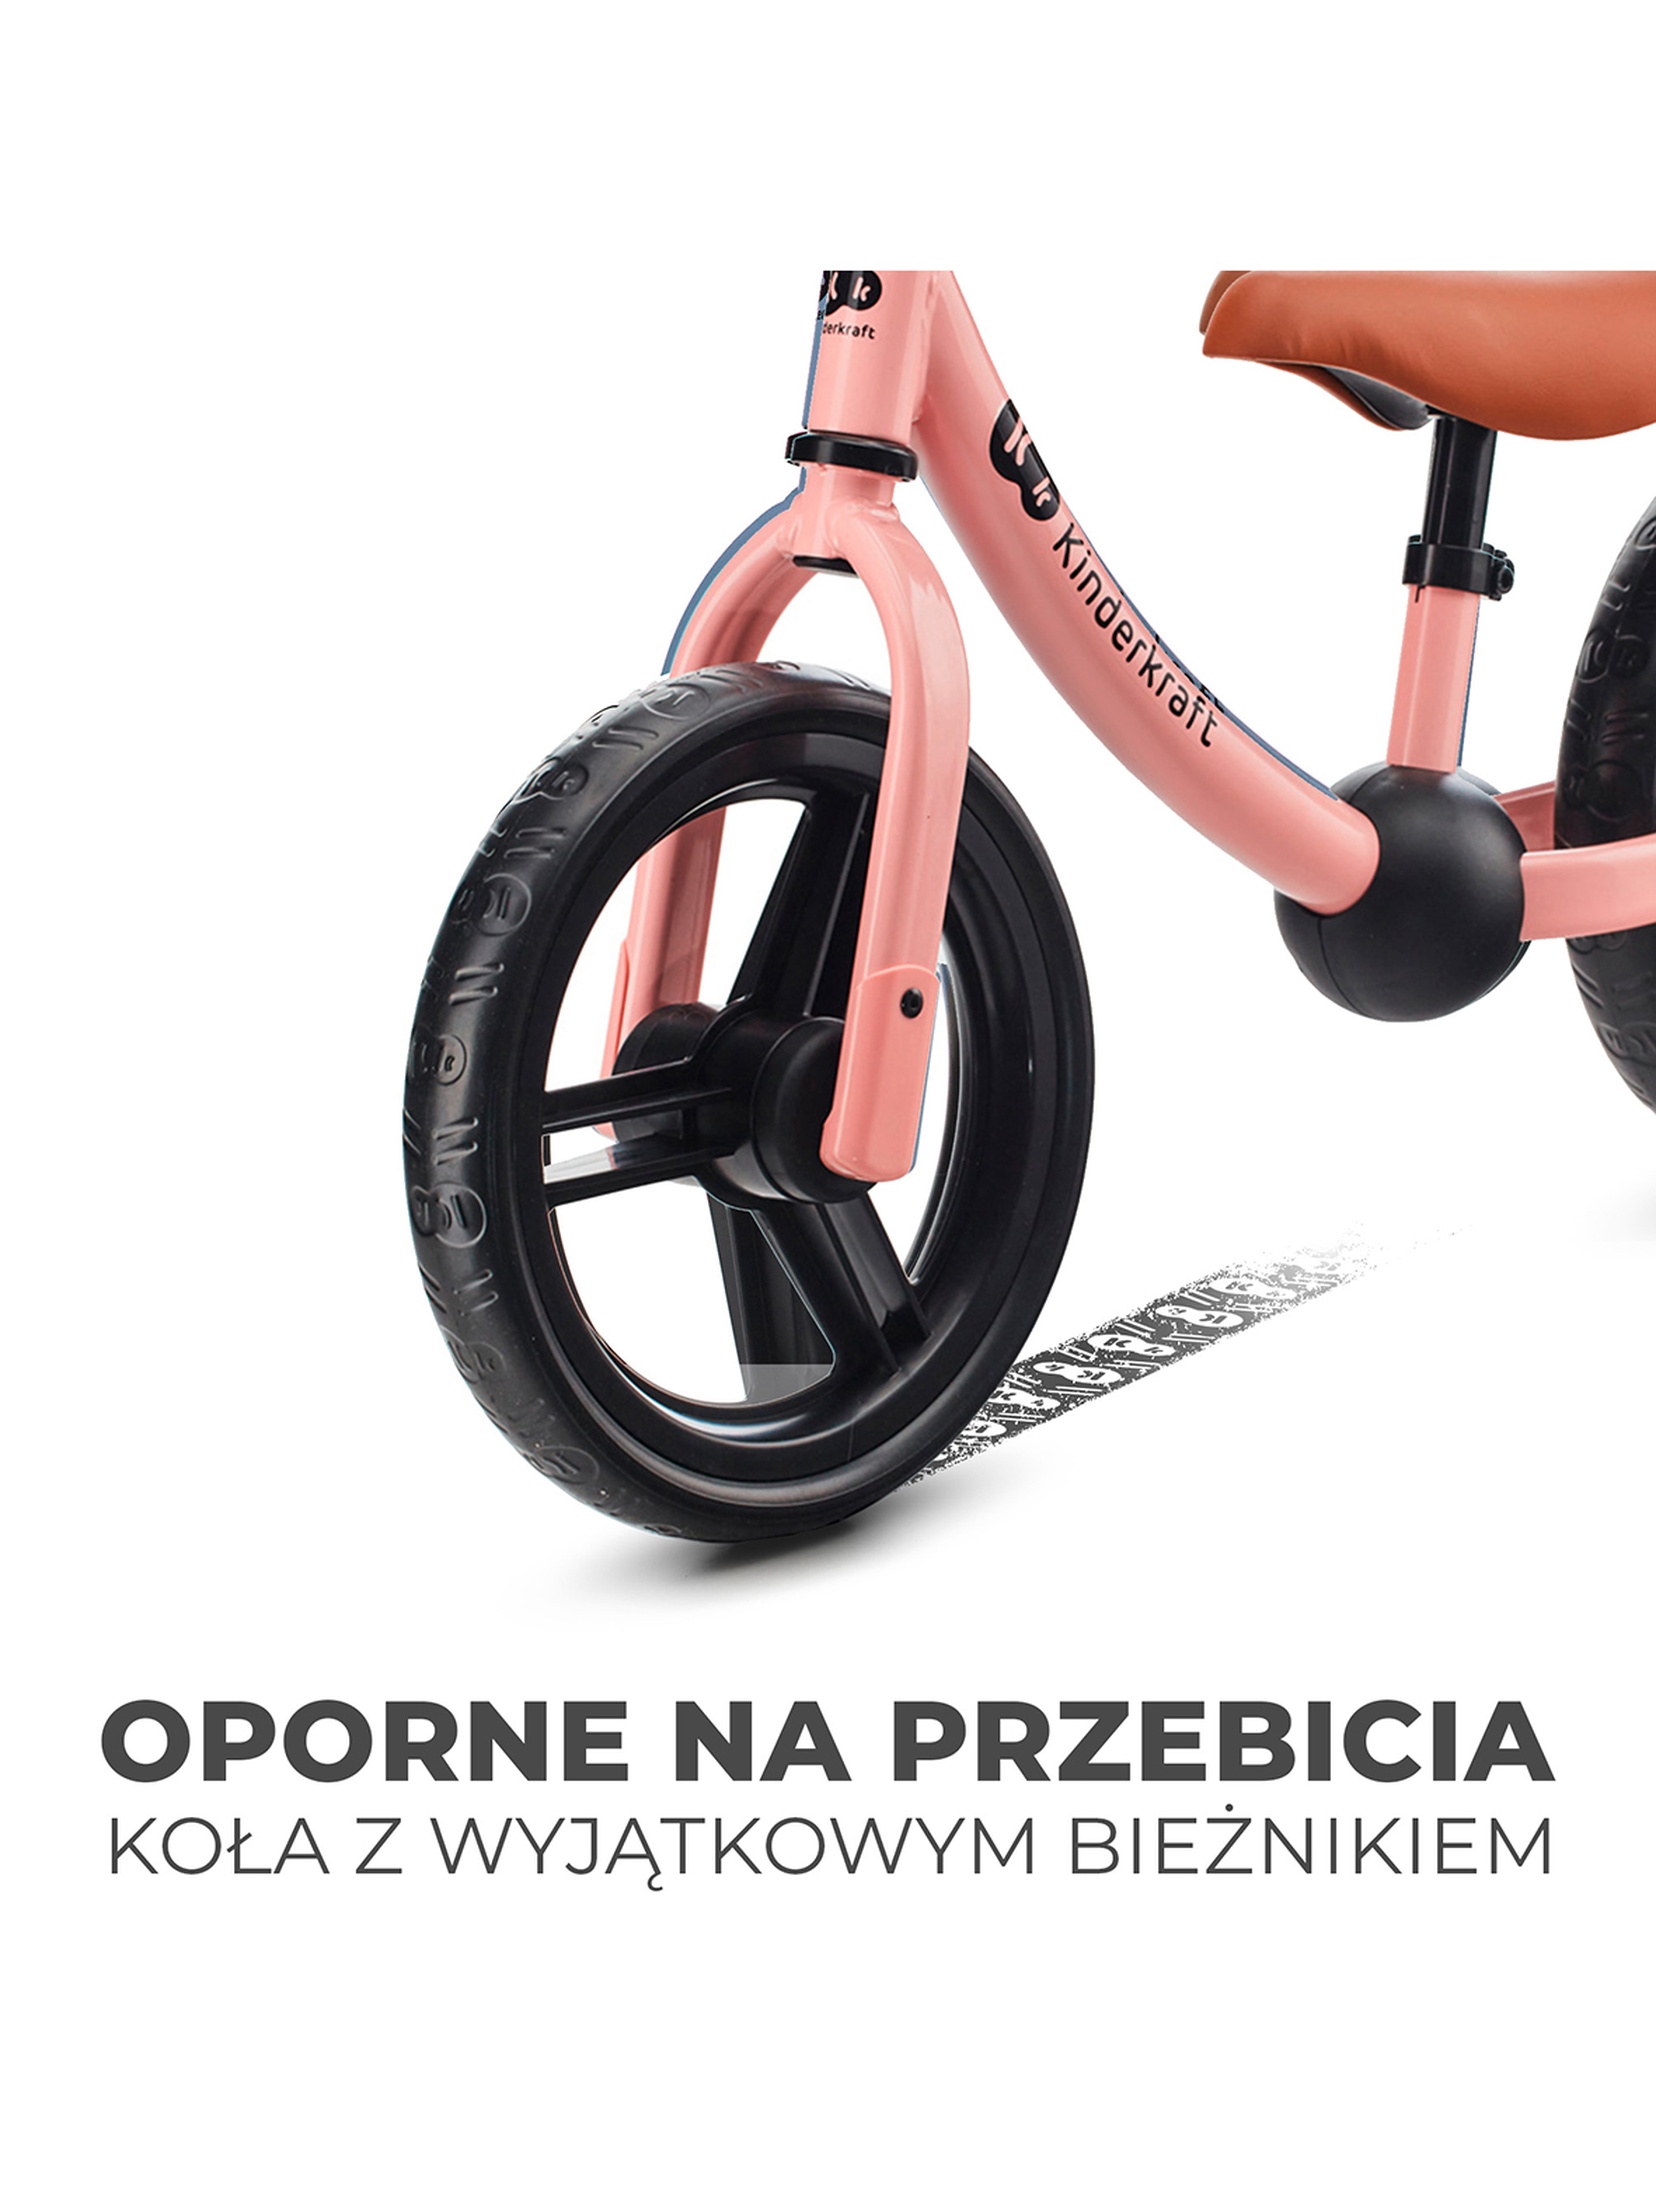 Rowerek biegowy 2WAY NEXT Kinderkraft - rosa pink